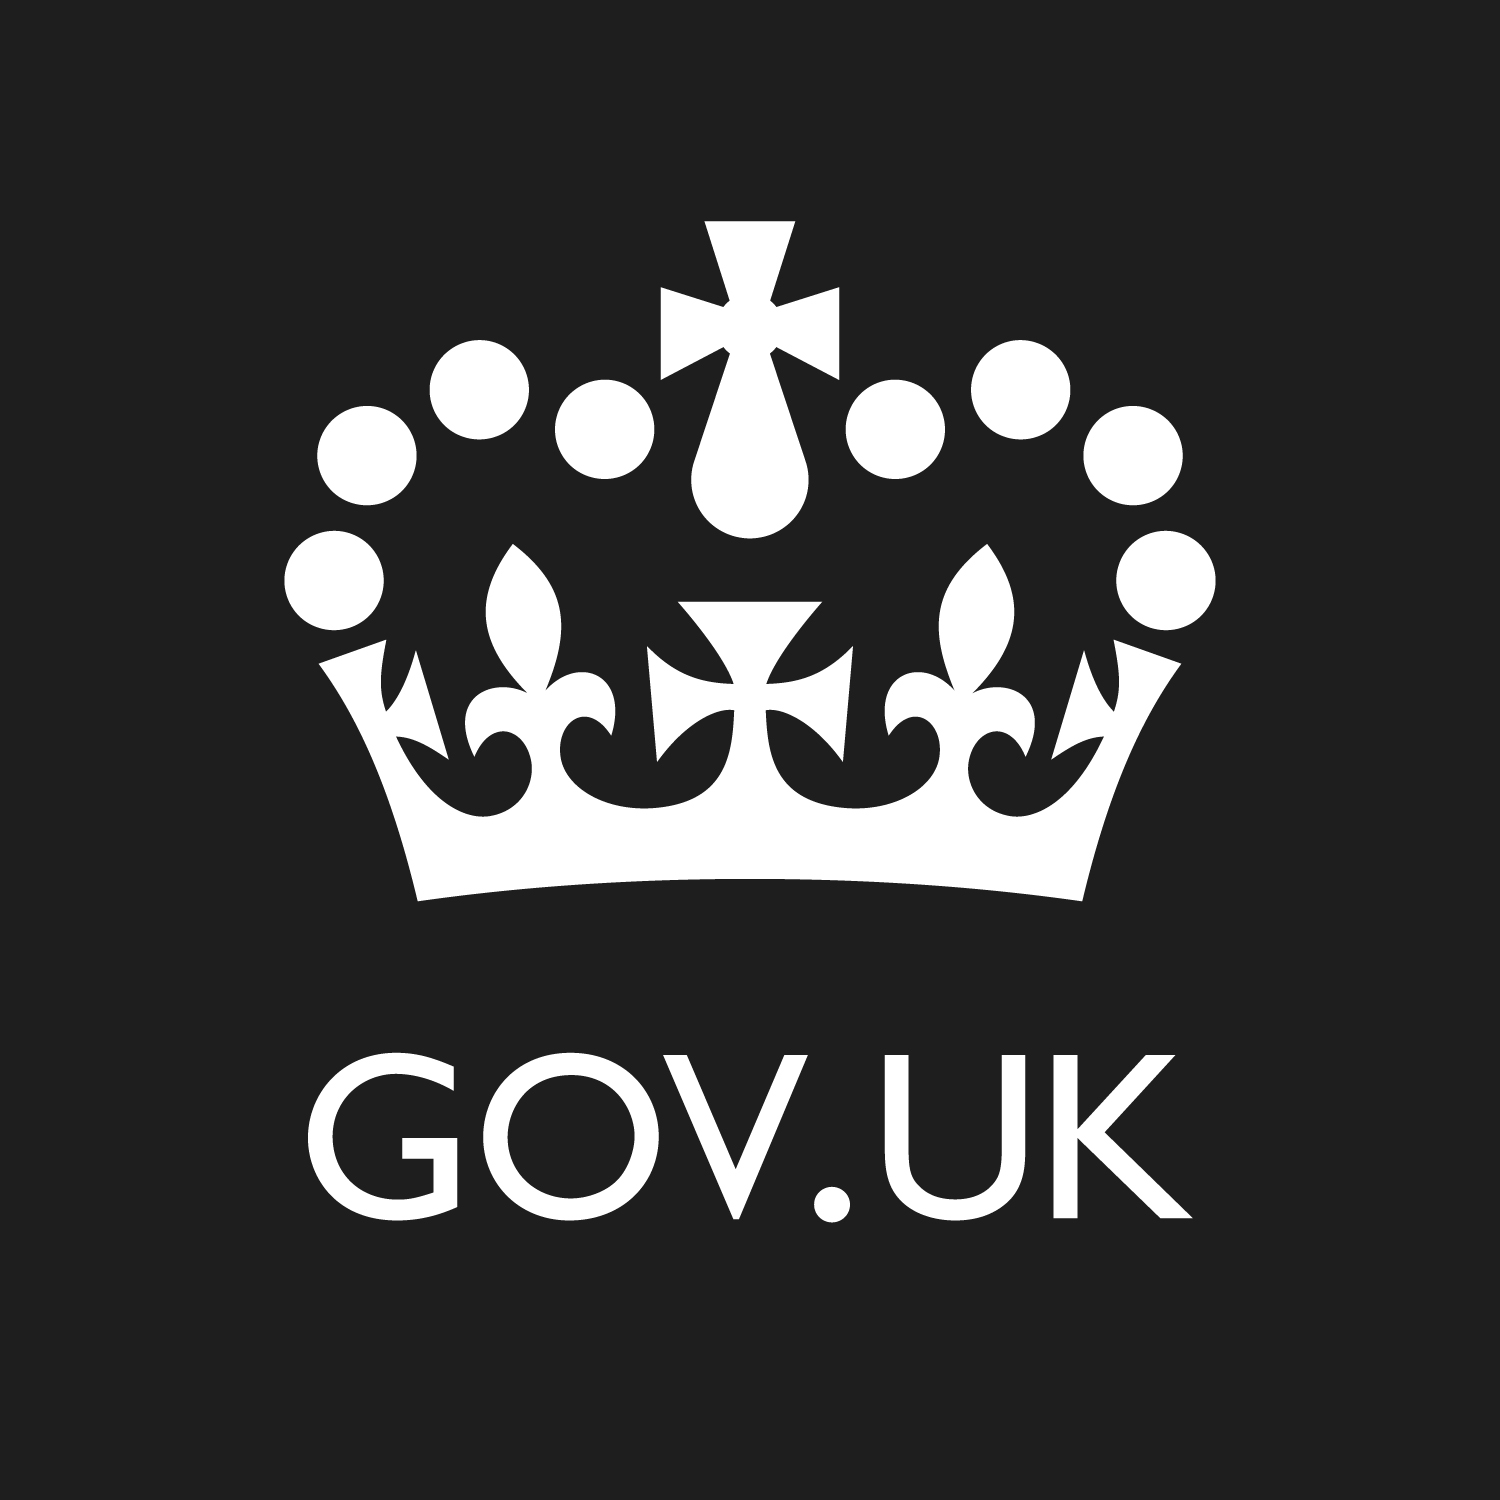 Sign in - Civil Service Jobs - GOV.UK